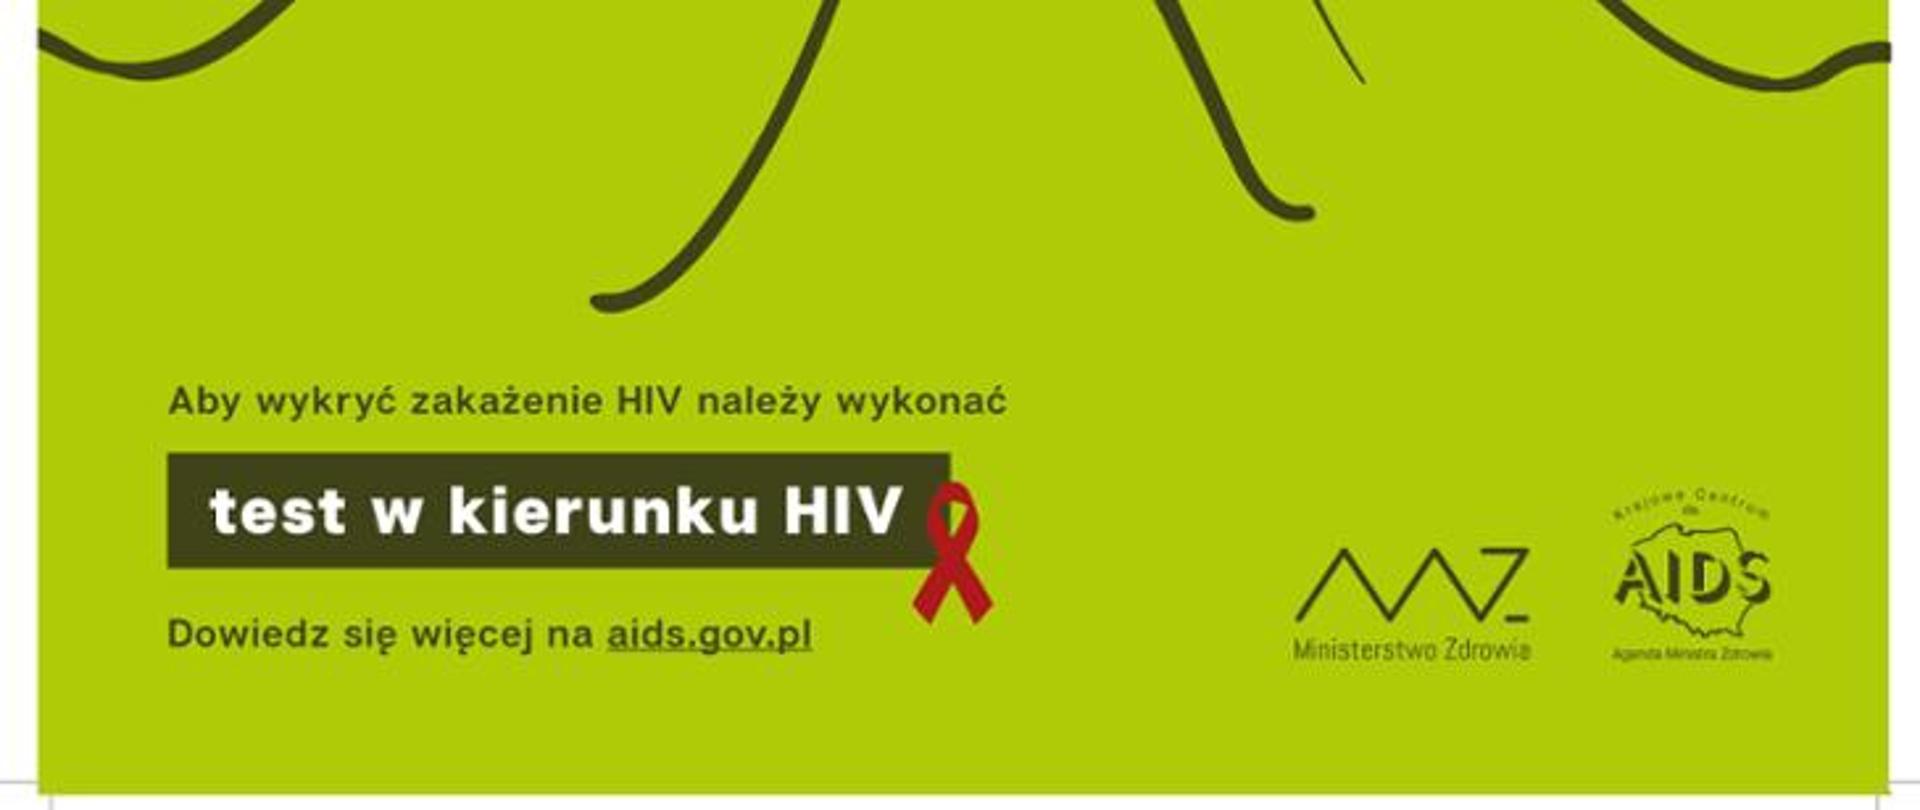 Plakat kolejnej edycji działań edukacyjno-informacyjnych. Na zielonym tle widnieje zapis: Aby wykryć zakażenie HIV należy wykonać test w kierunku HIV. 